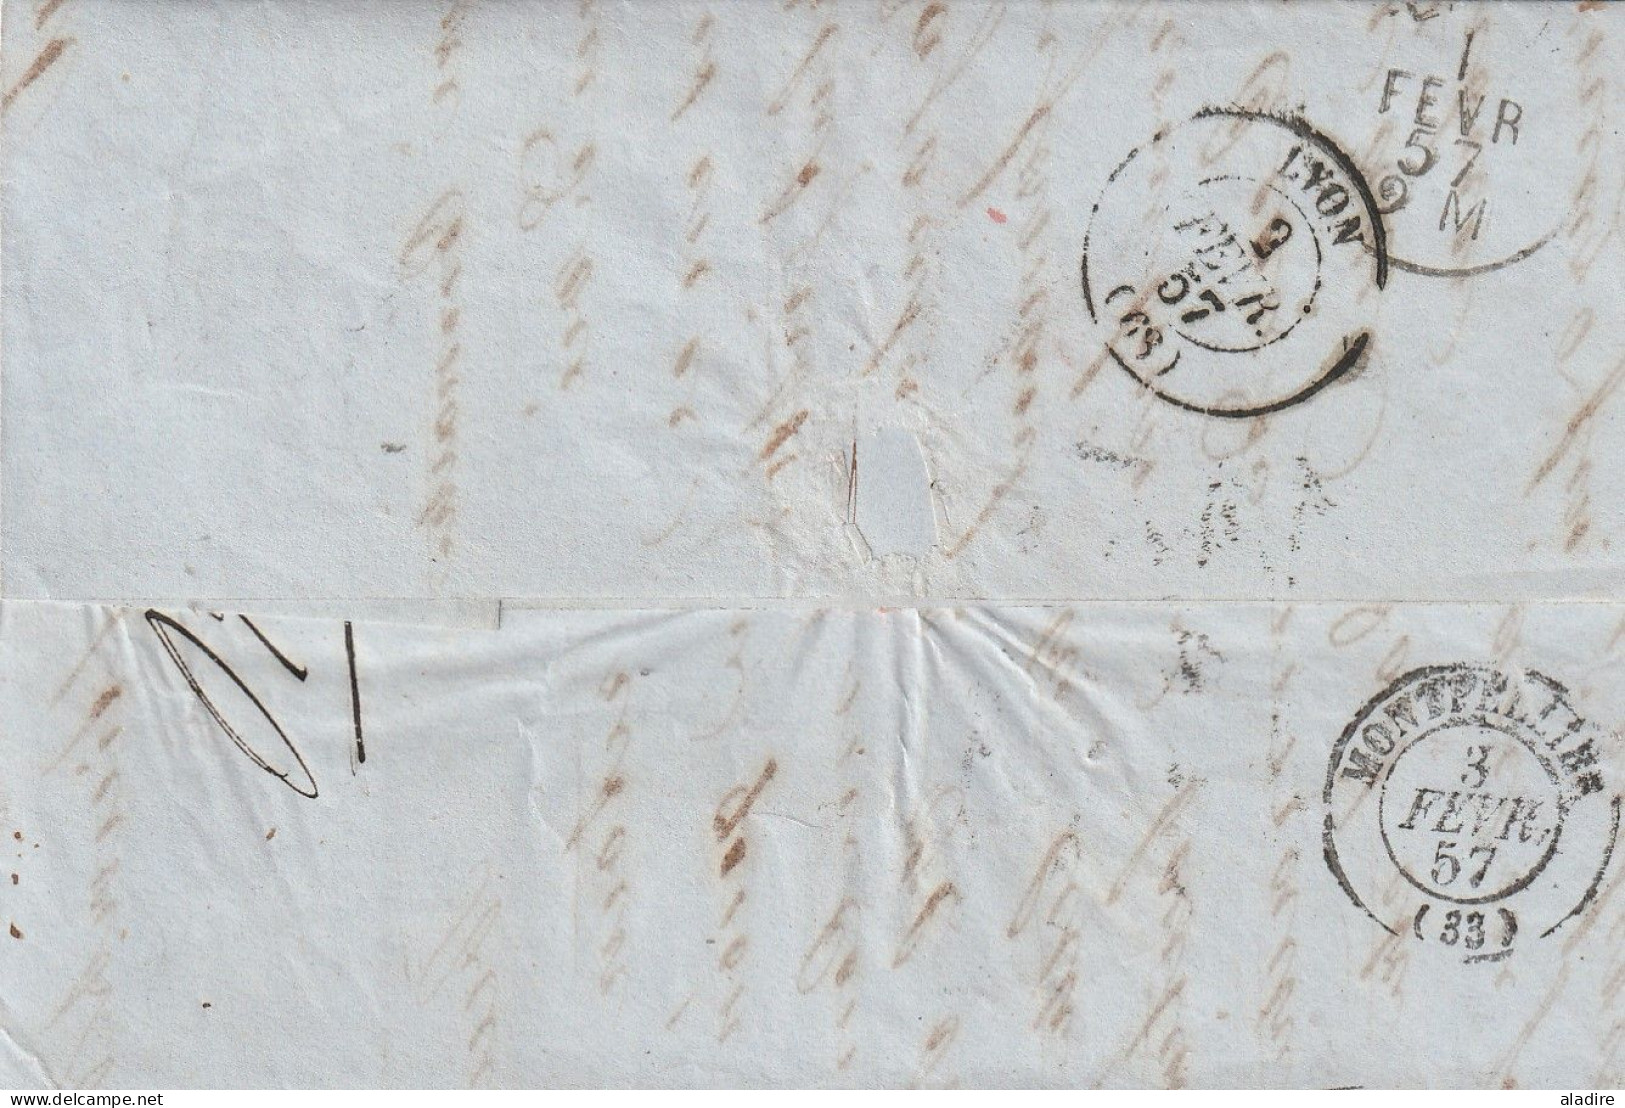 19e siècle - 1811 / 1864 - petite collection de 15 lettres pliées de SUISSE - marcophilie - marques postales - 30 scans